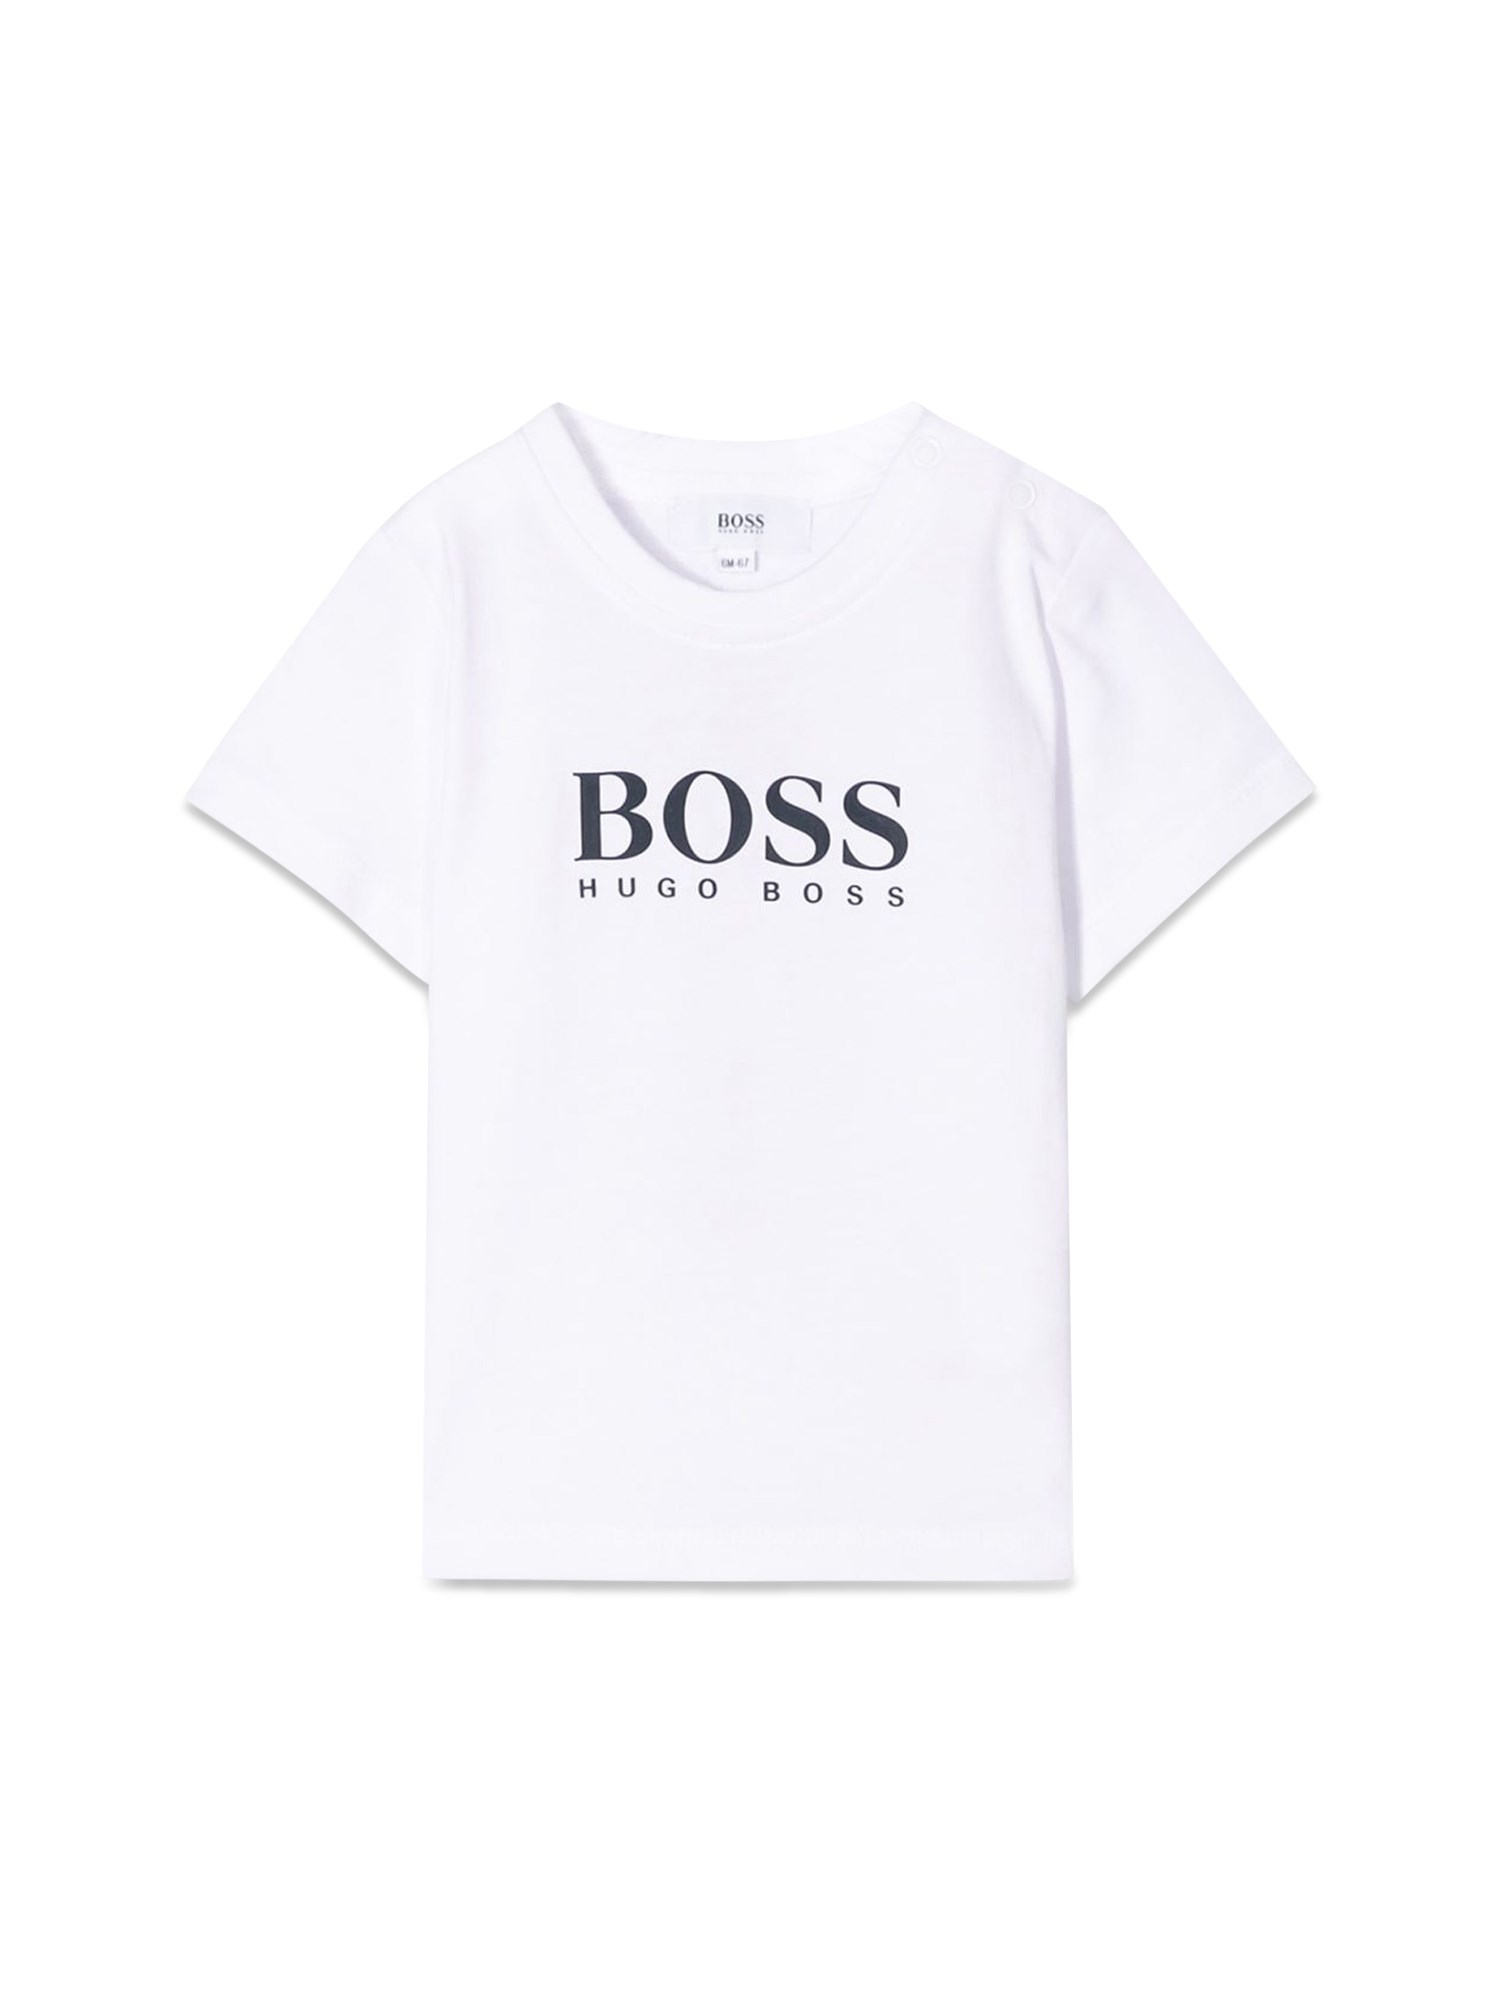 BOSS boss tee shirt